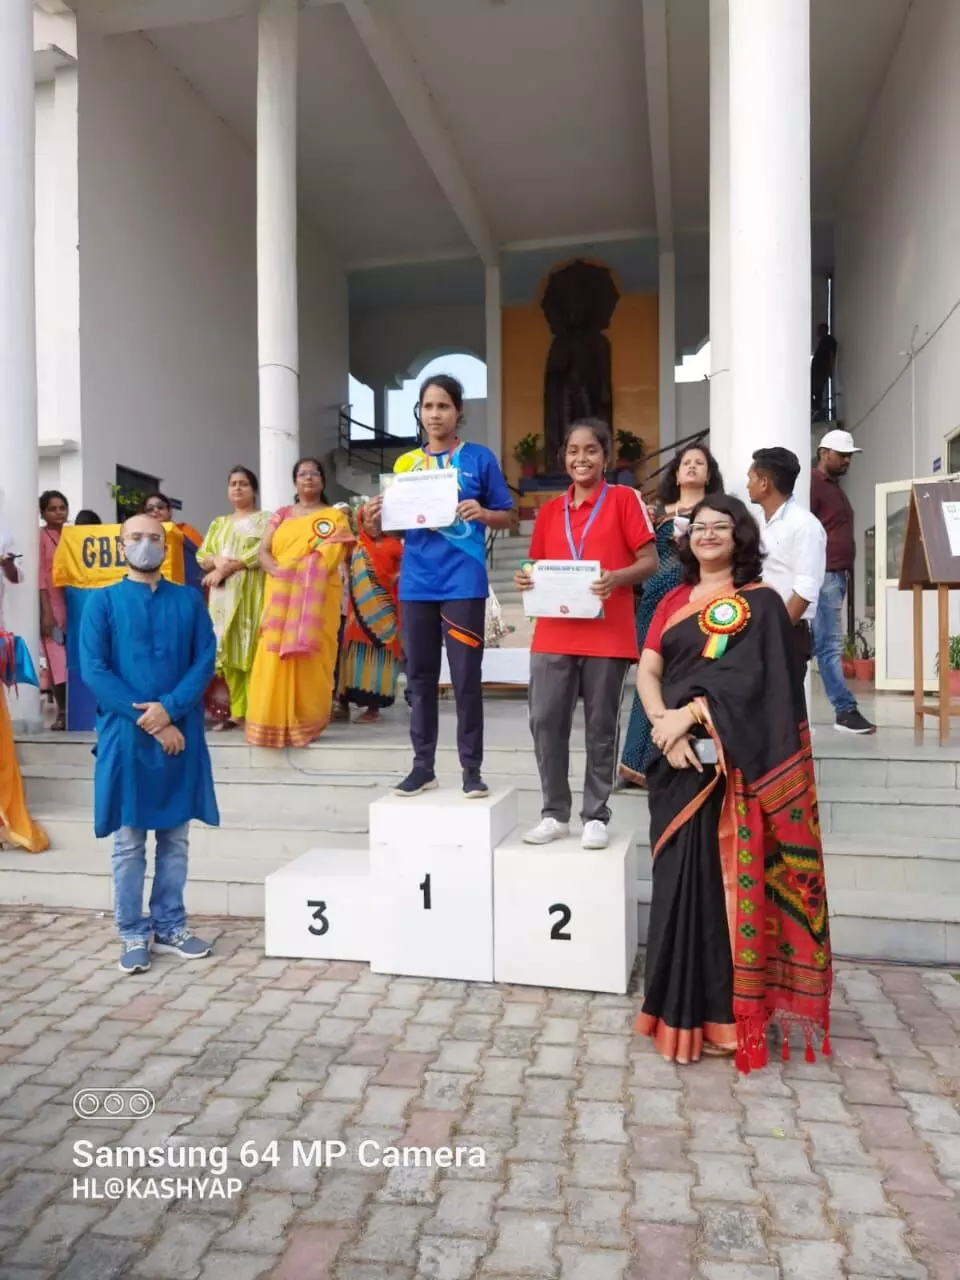 दौड़ में भोनवाल कॉलेज के छात्र प्रथम, दो दिवसीय सपोर्ट मीट का भव्य समापन